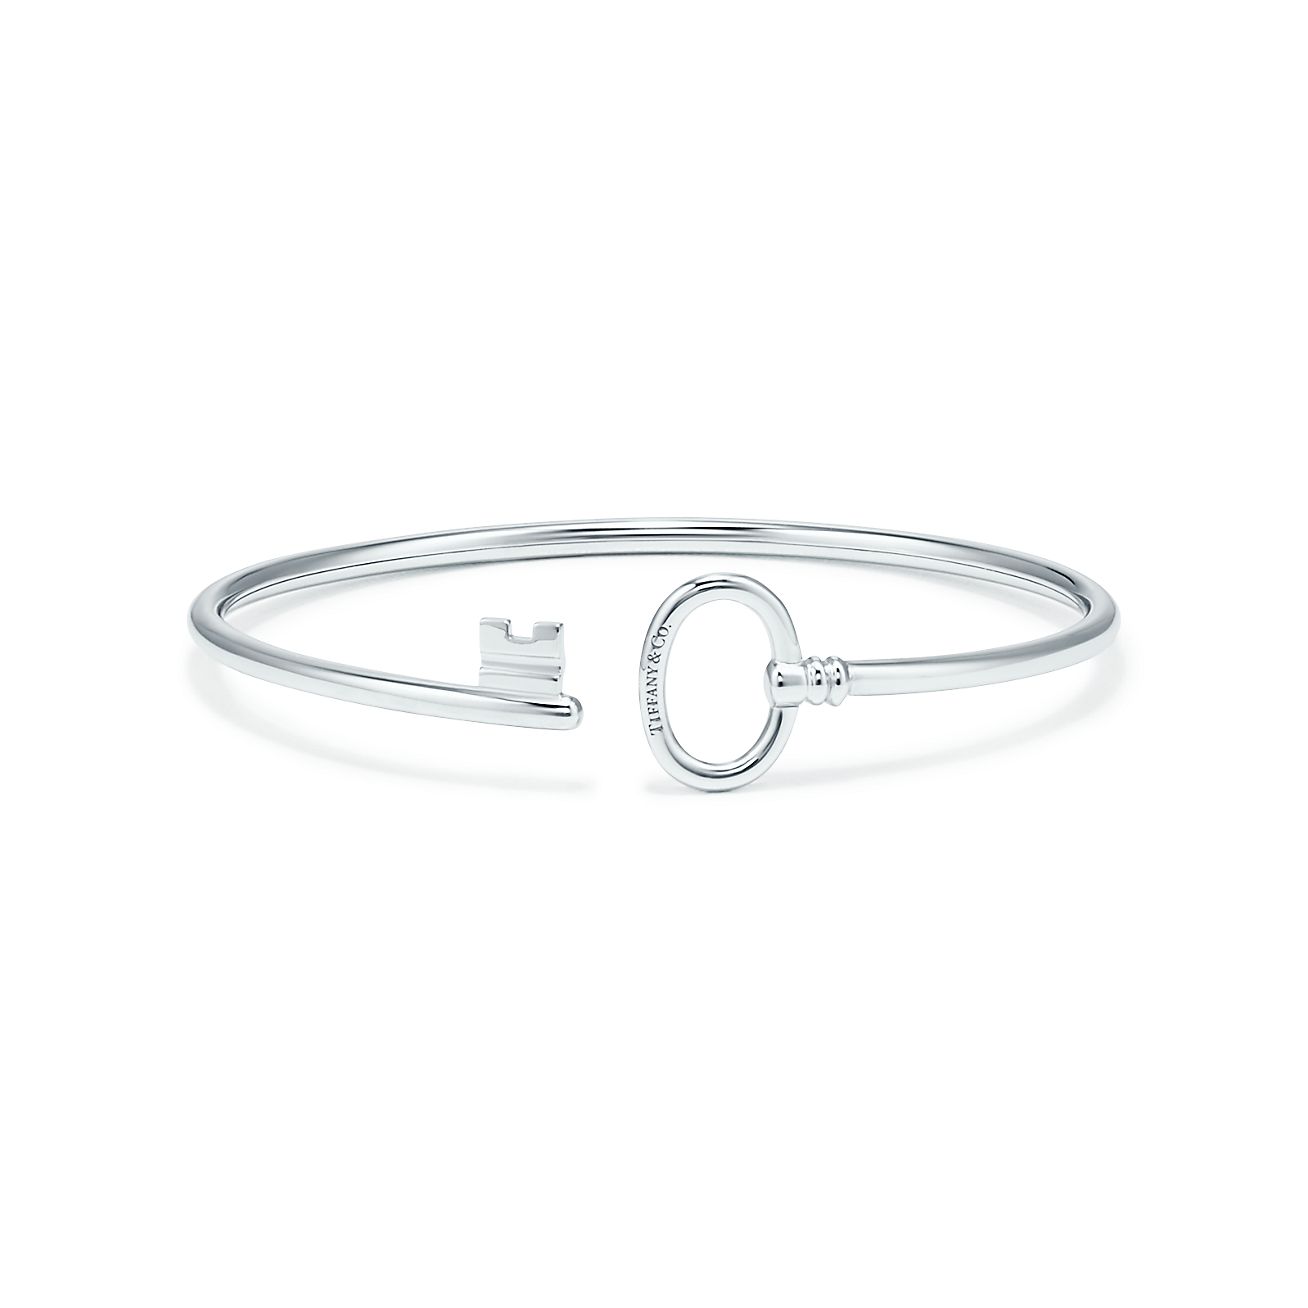 Tiffany Keys wire bracelet in 18k white 